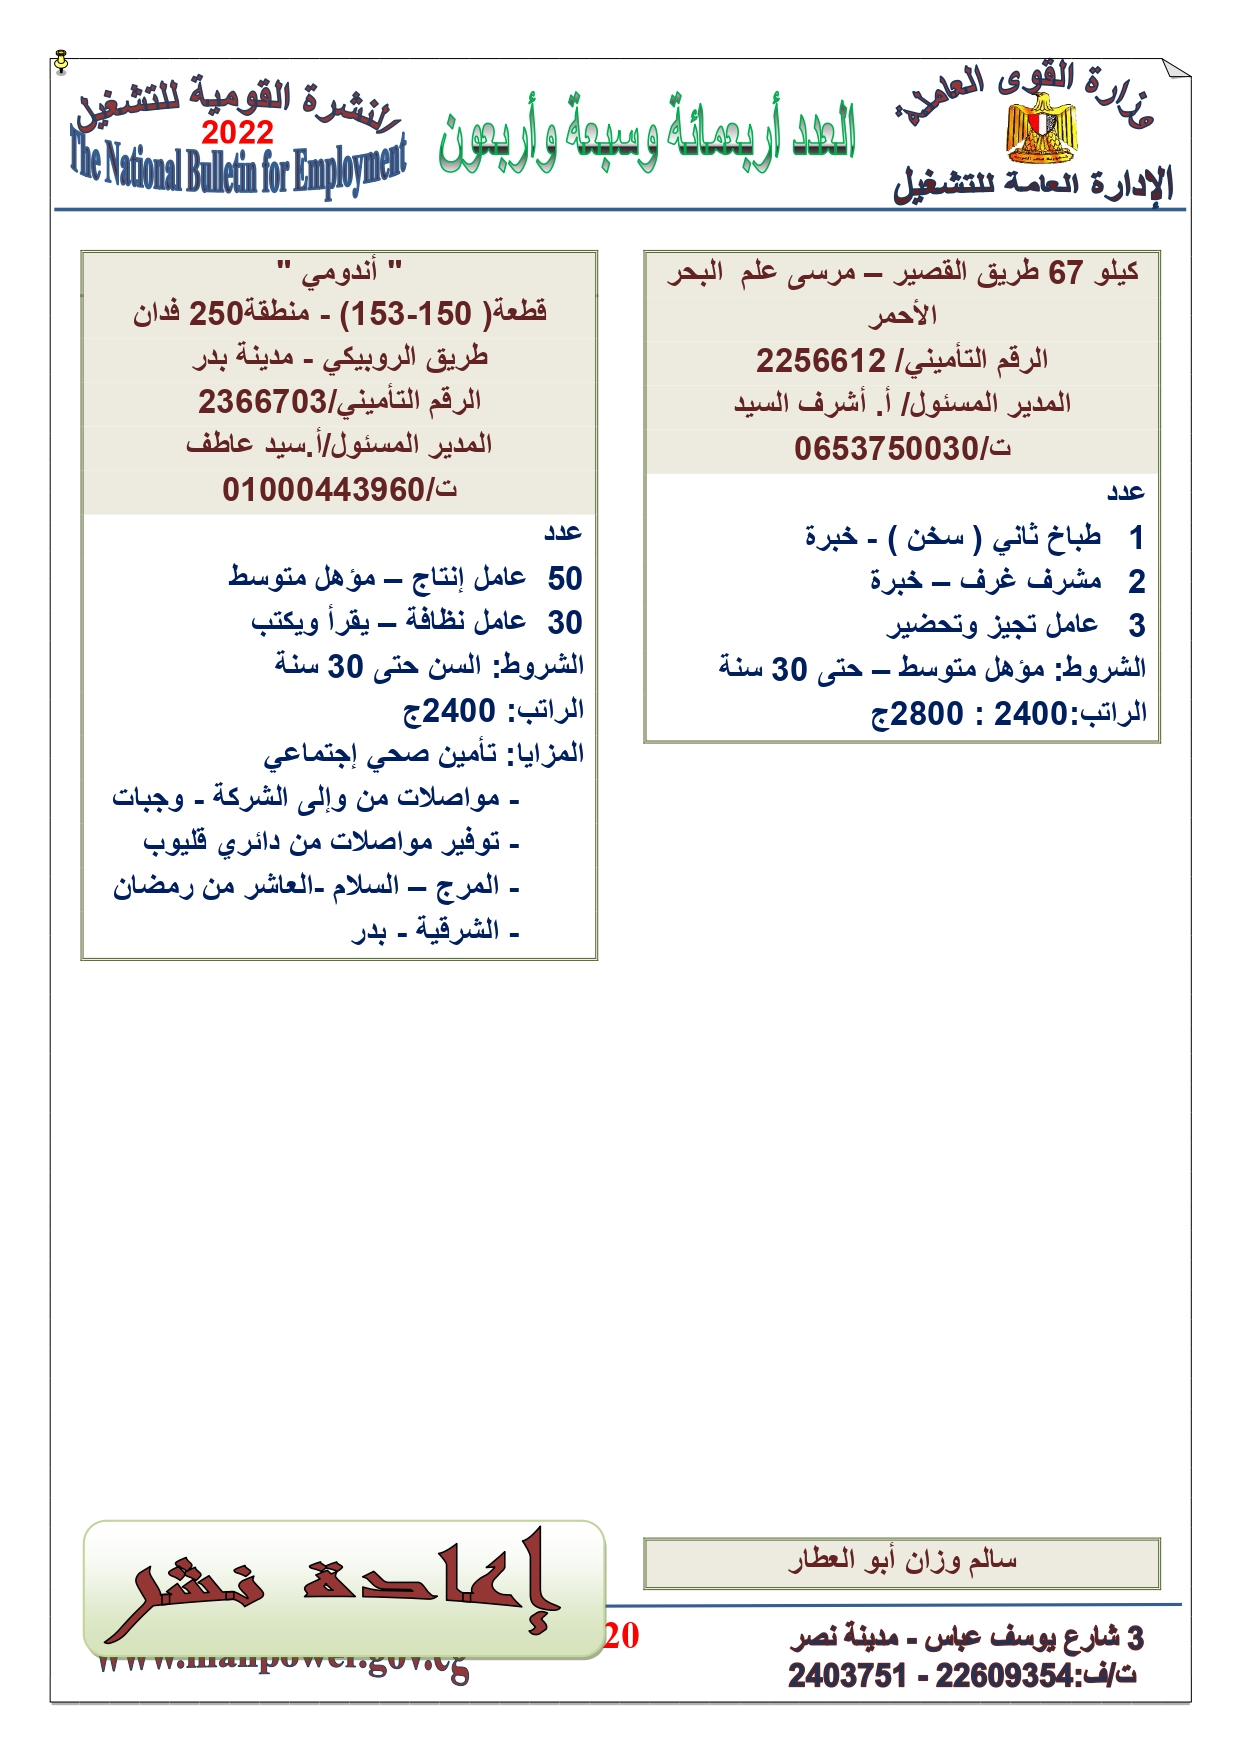 وظائف خالية بمصر وزارة القوي العاملة تعلن عن 2530 وظيفة شاغرة لجميع المؤهلات خلال فبراير ومارس 2022 14